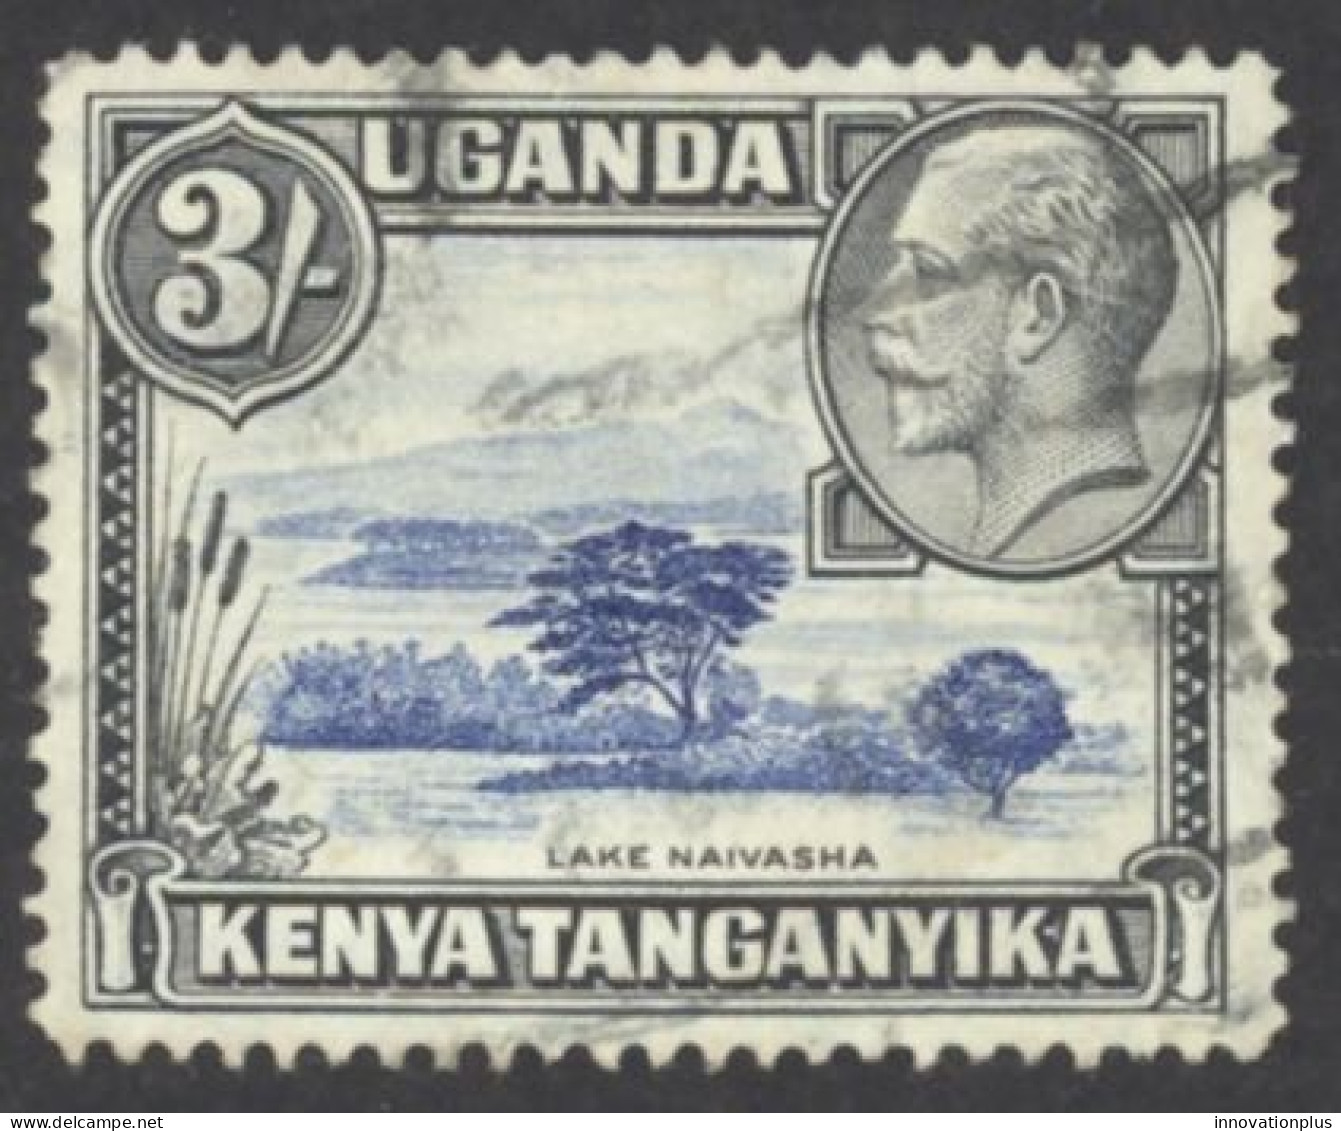 Kenya, Uganda, Tanzania Sc# 56 MH 1935 3sh Definitives - Kenya, Uganda & Tanzania